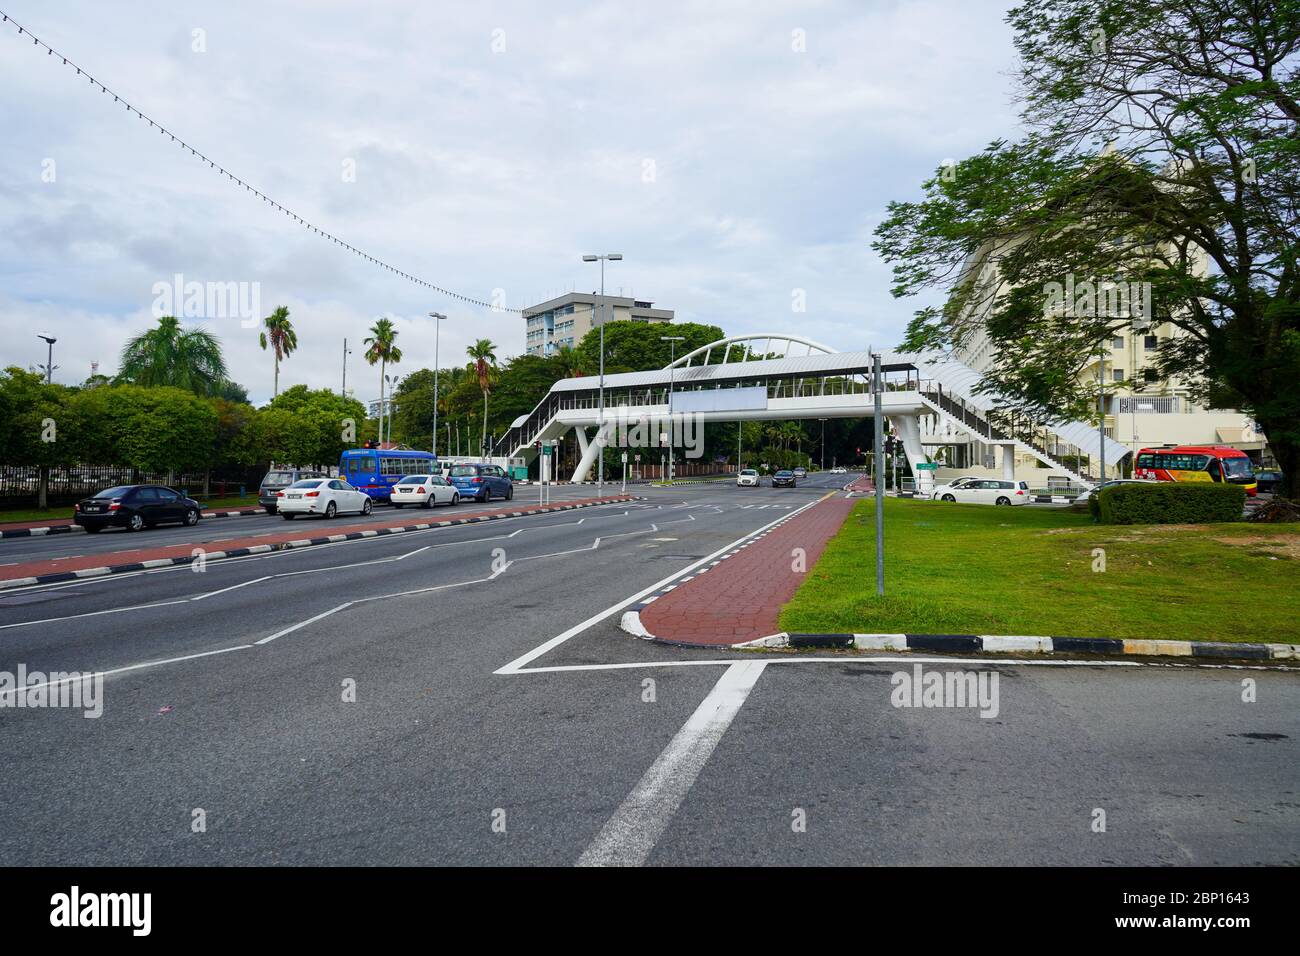 Straßenmarkierungen, Gehweg, Überführung und verschiedene Bäume von Bandar Seri Begawan, Brunei. November 2019 Stockfoto